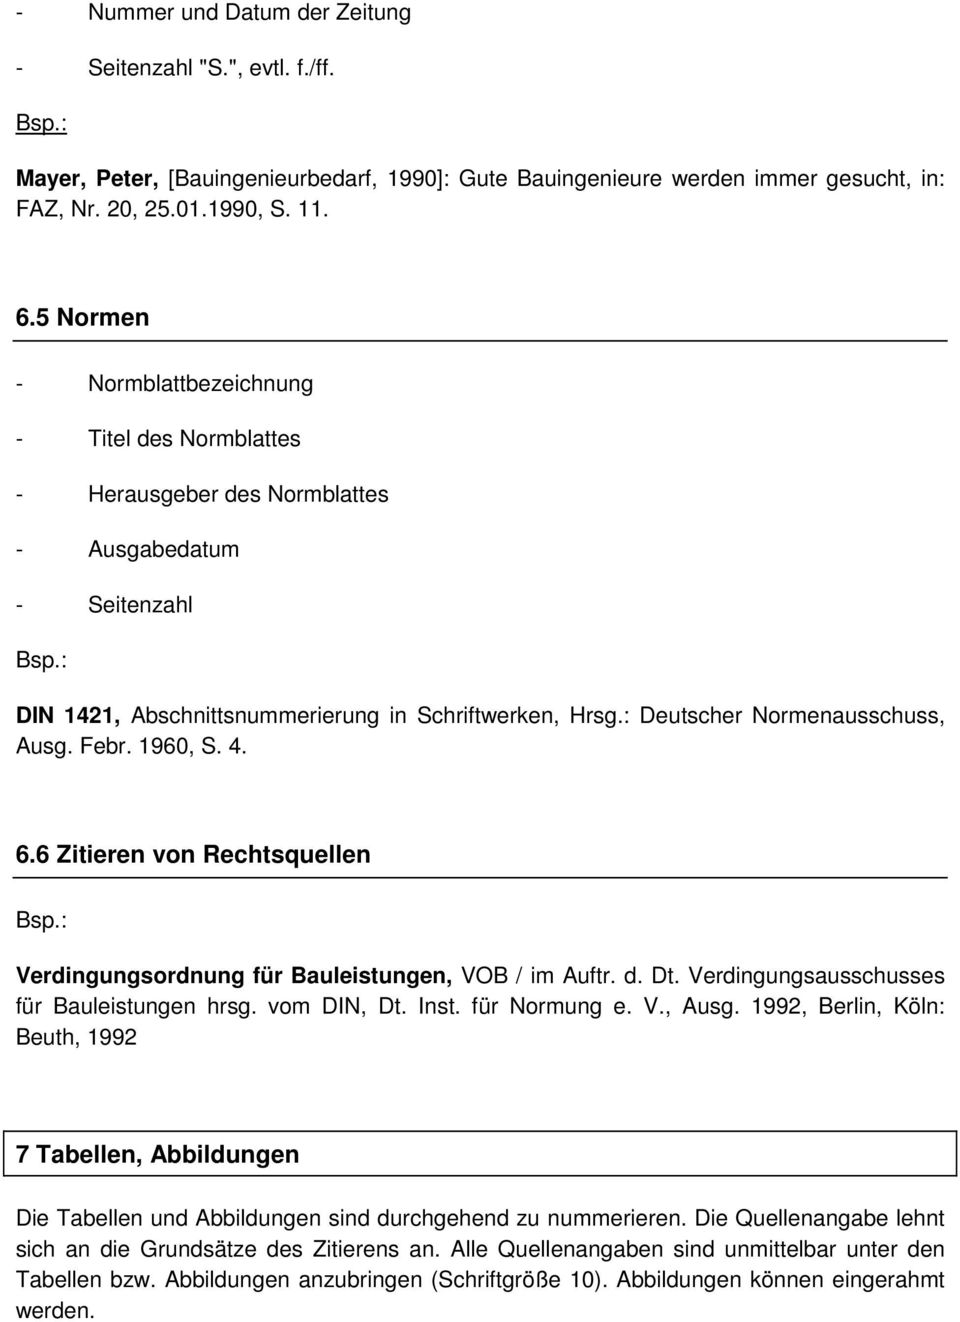 : Deutscher Normenausschuss, Ausg. Febr. 1960, S. 4. 6.6 Zitieren von Rechtsquellen Verdingungsordnung für Bauleistungen, VOB / im Auftr. d. Dt. Verdingungsausschusses für Bauleistungen hrsg.